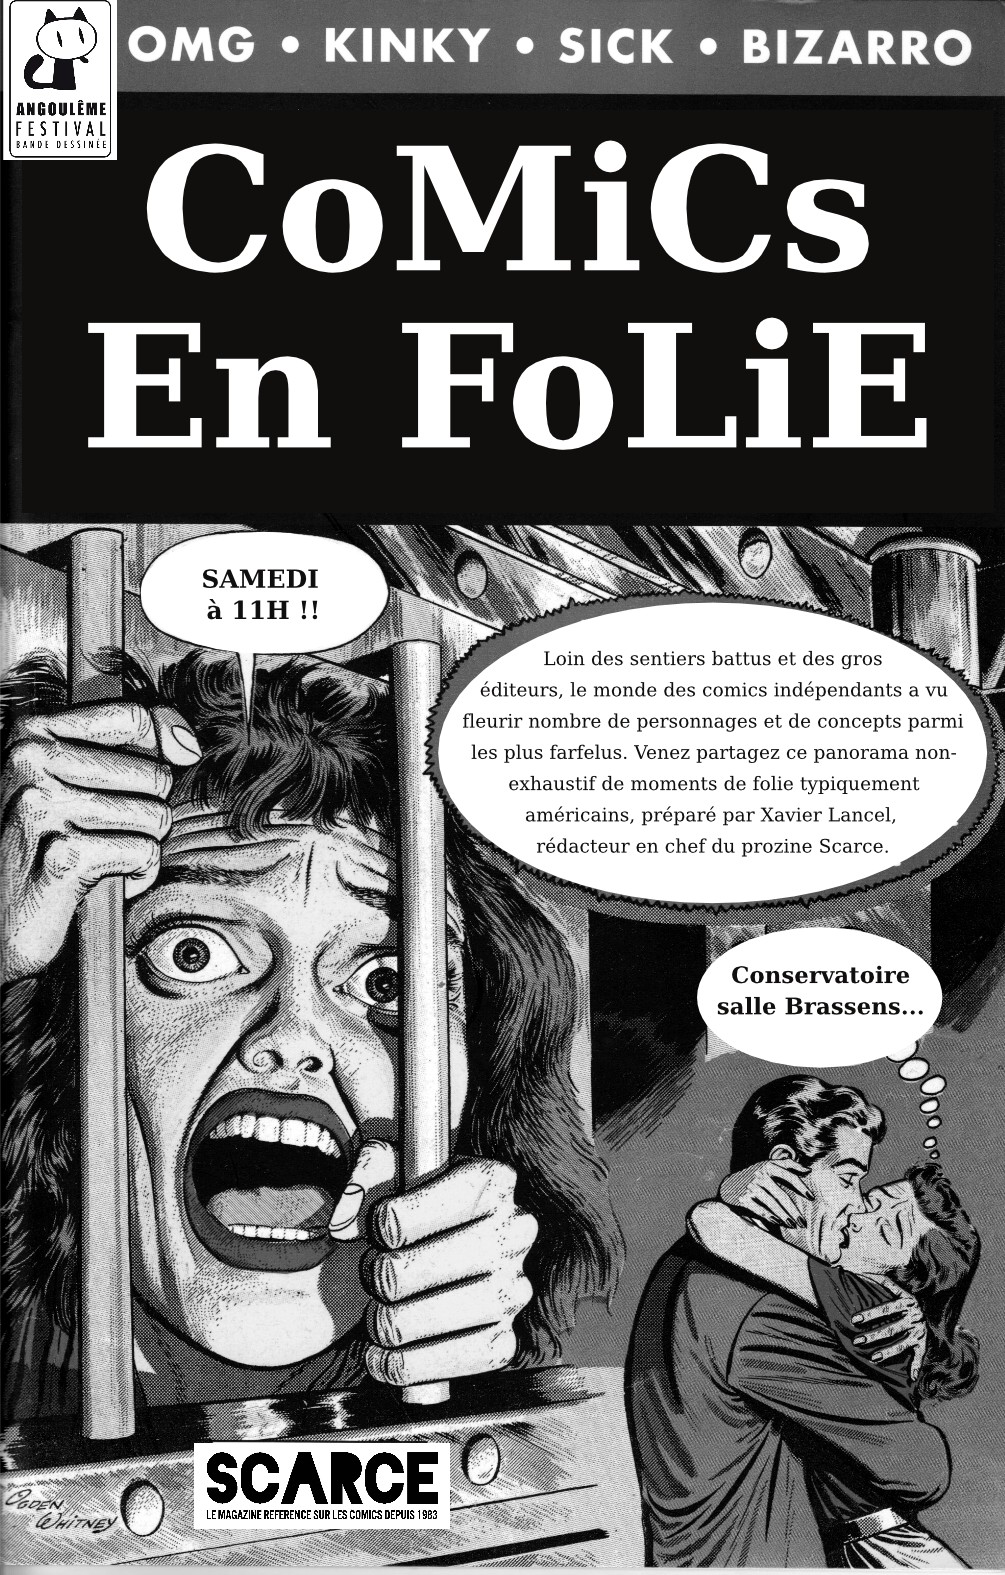 Angouleme 2017 Folie-page001